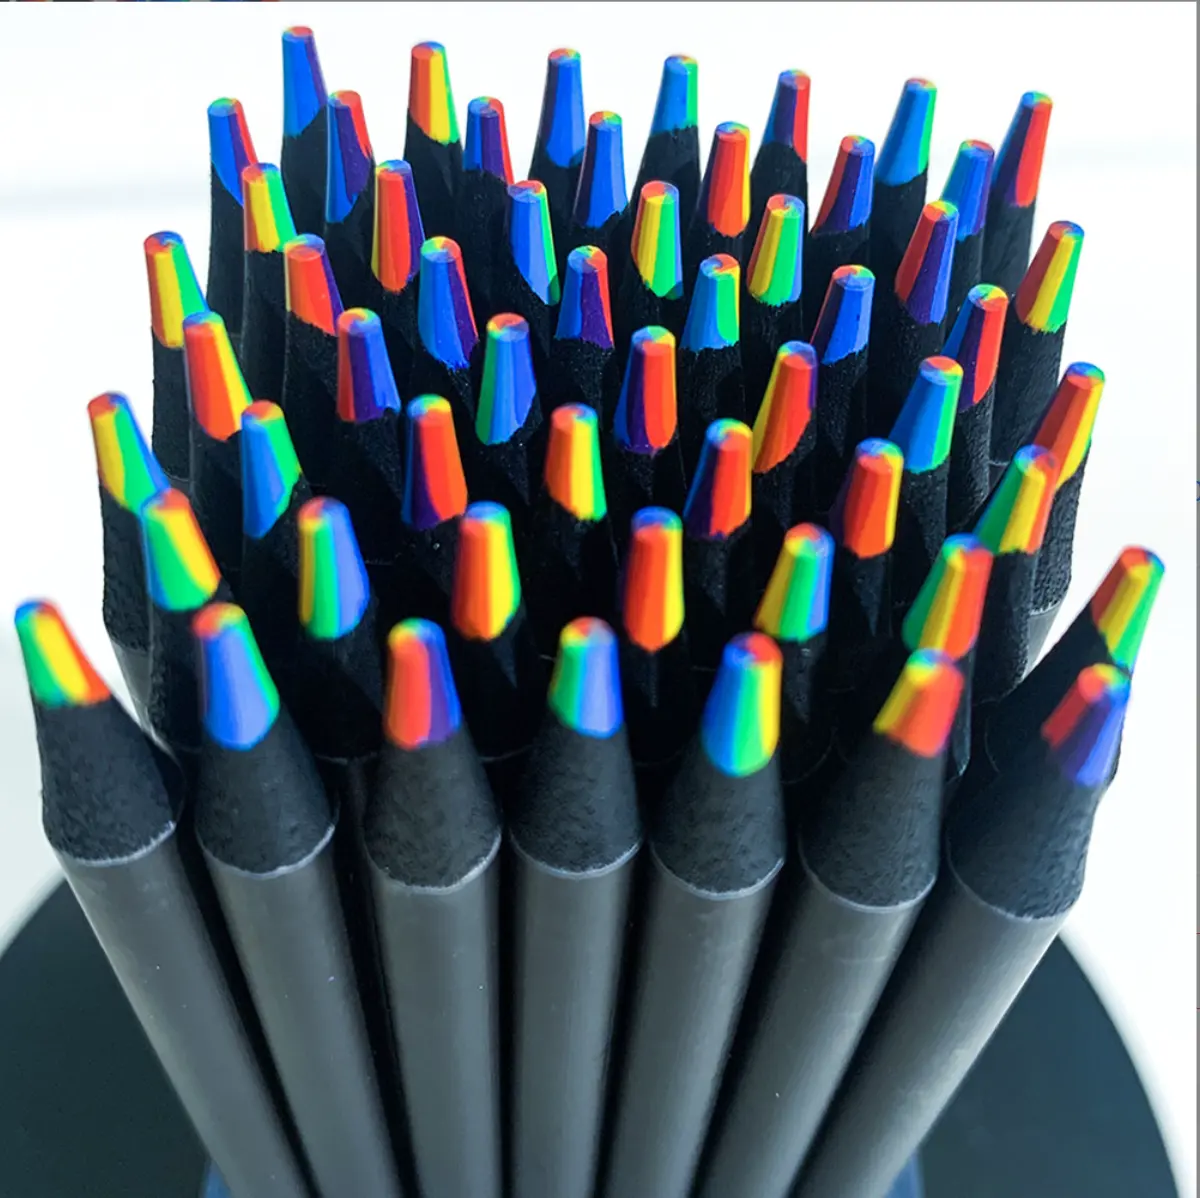 Hölzerne Farb stifte Kinder 7 Farben Regenbogens tifte für Kunst zeichnung, Färbung, Skizzieren Magischer Regenbogens tift für Kinder